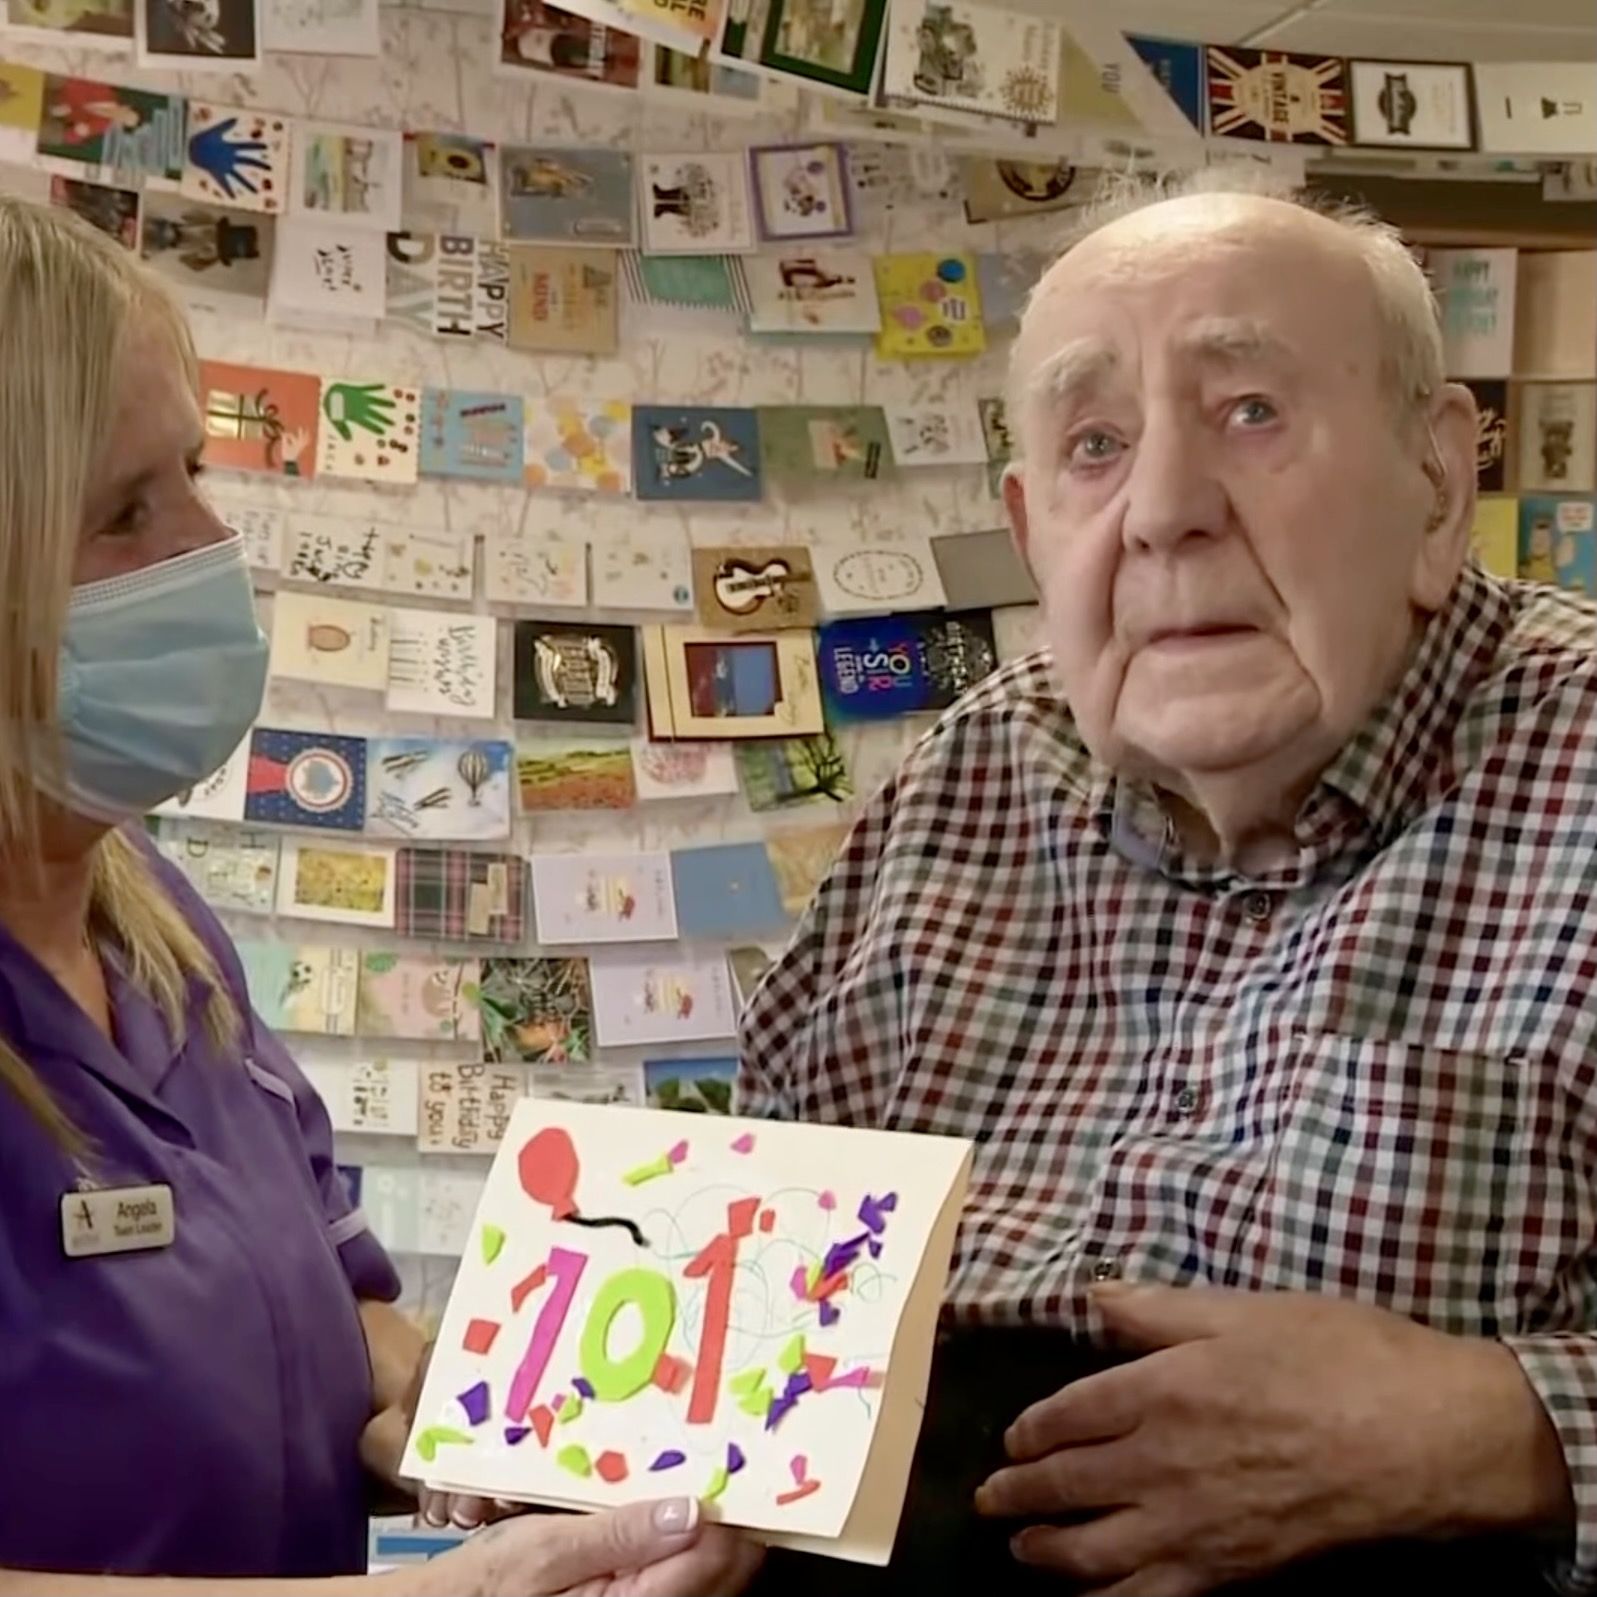 El cumpleaños más conmovedor: un veterano de guerra cumple 101 años y recibe 5.000 felicitaciones (Foto: Captura de vídeo de ITV News)